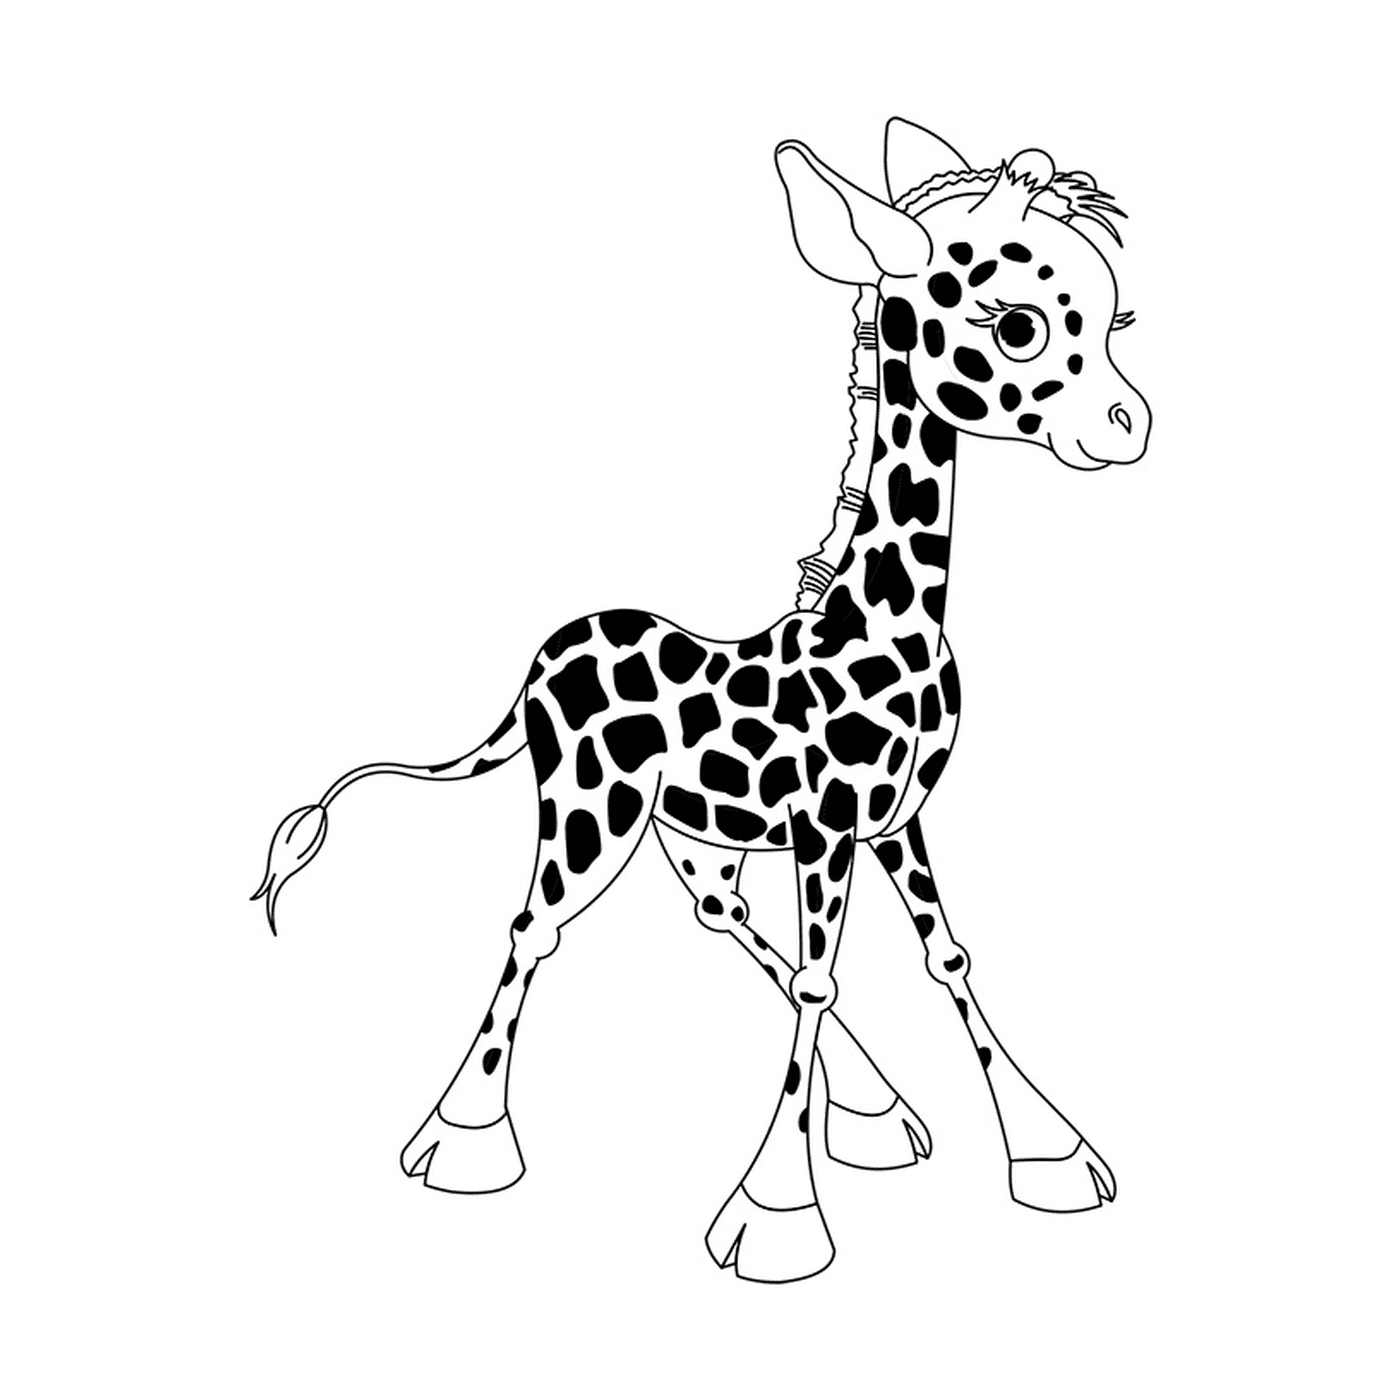  一个长颈鹿婴儿站立 